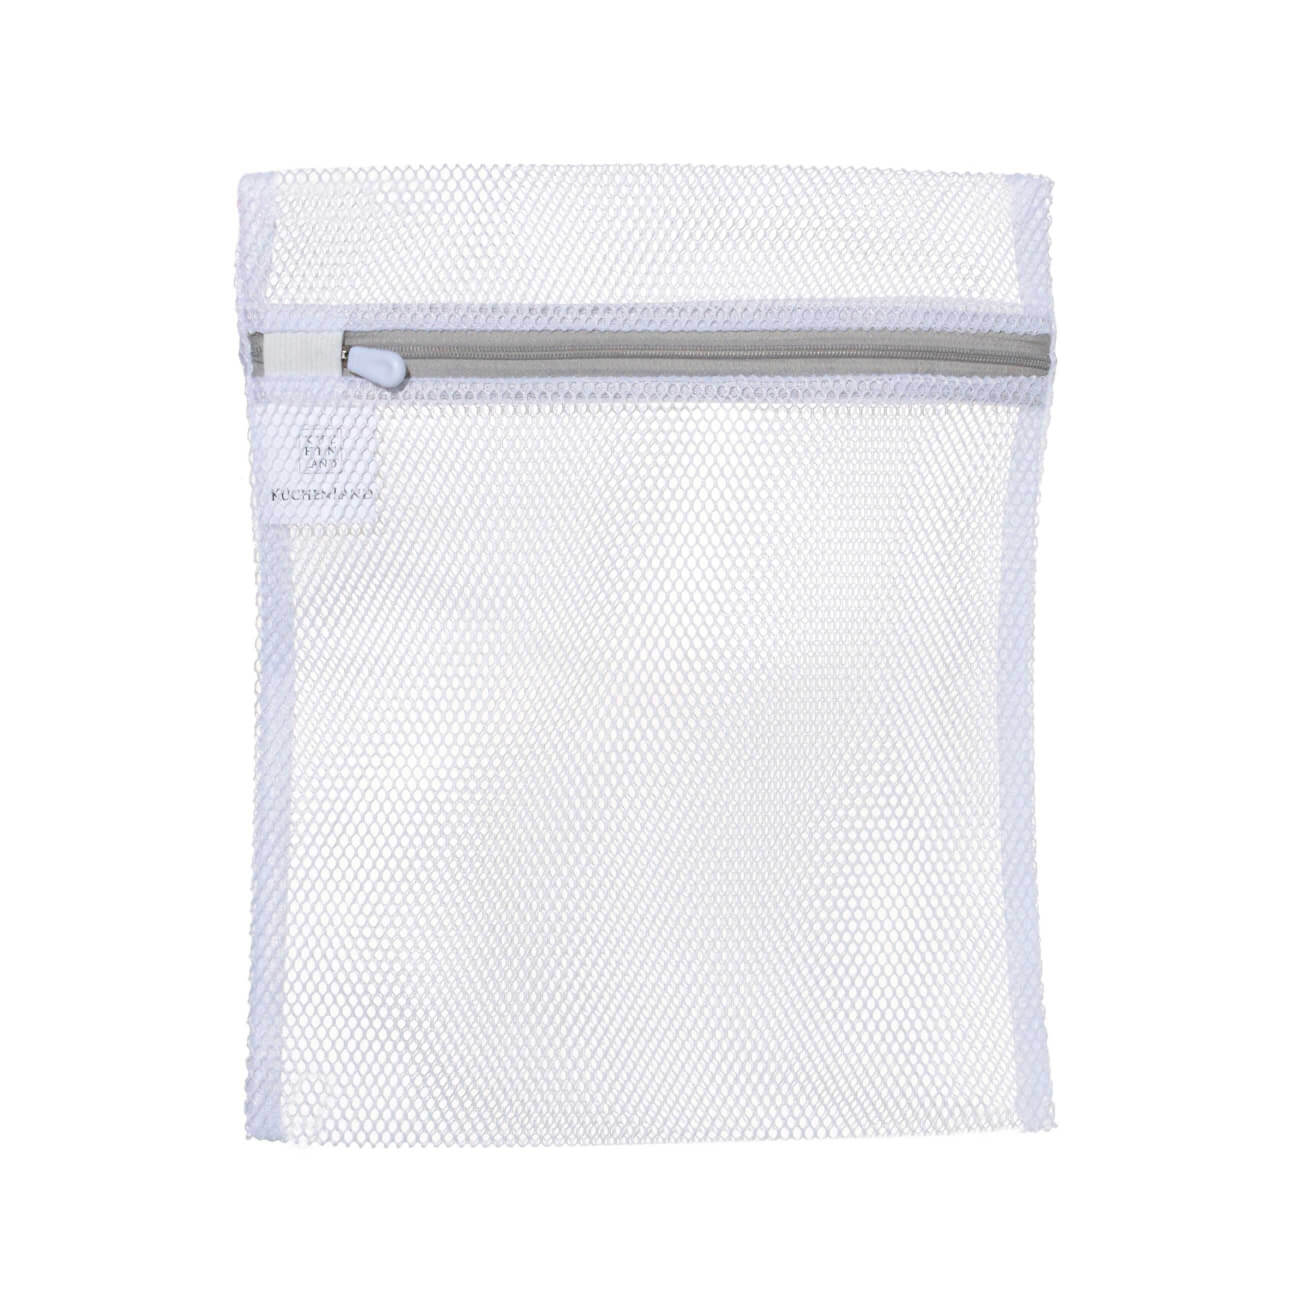 Мешок для стирки нижнего белья, 25х30 см, полиэстер, бело-серый, Safety